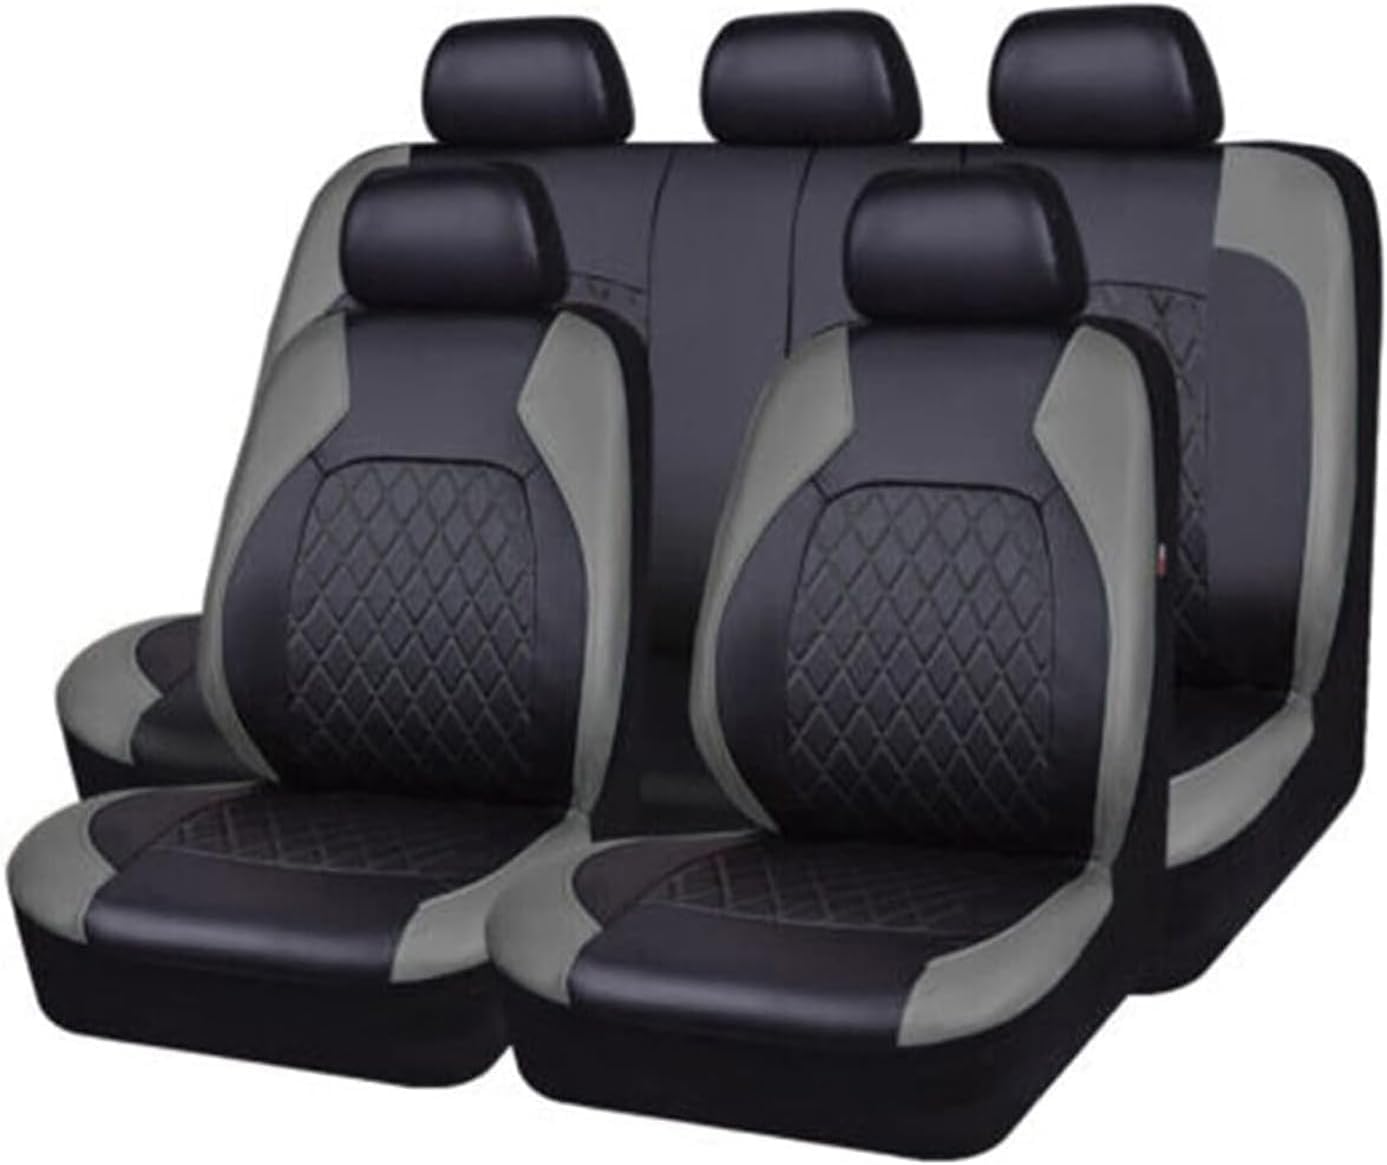 Auto Leder Sitzbezüge für BMW E39 F10 E60 F30 E46 E36 X1 E84 E90 Serie 1 E87 F20 E46 E60 X5 E53 F30 E70, 9 Stück Allwetter rutschfest Wasserdicht Atmungsaktiv Schonbezug Set Sitzkissenschutz von SARCX